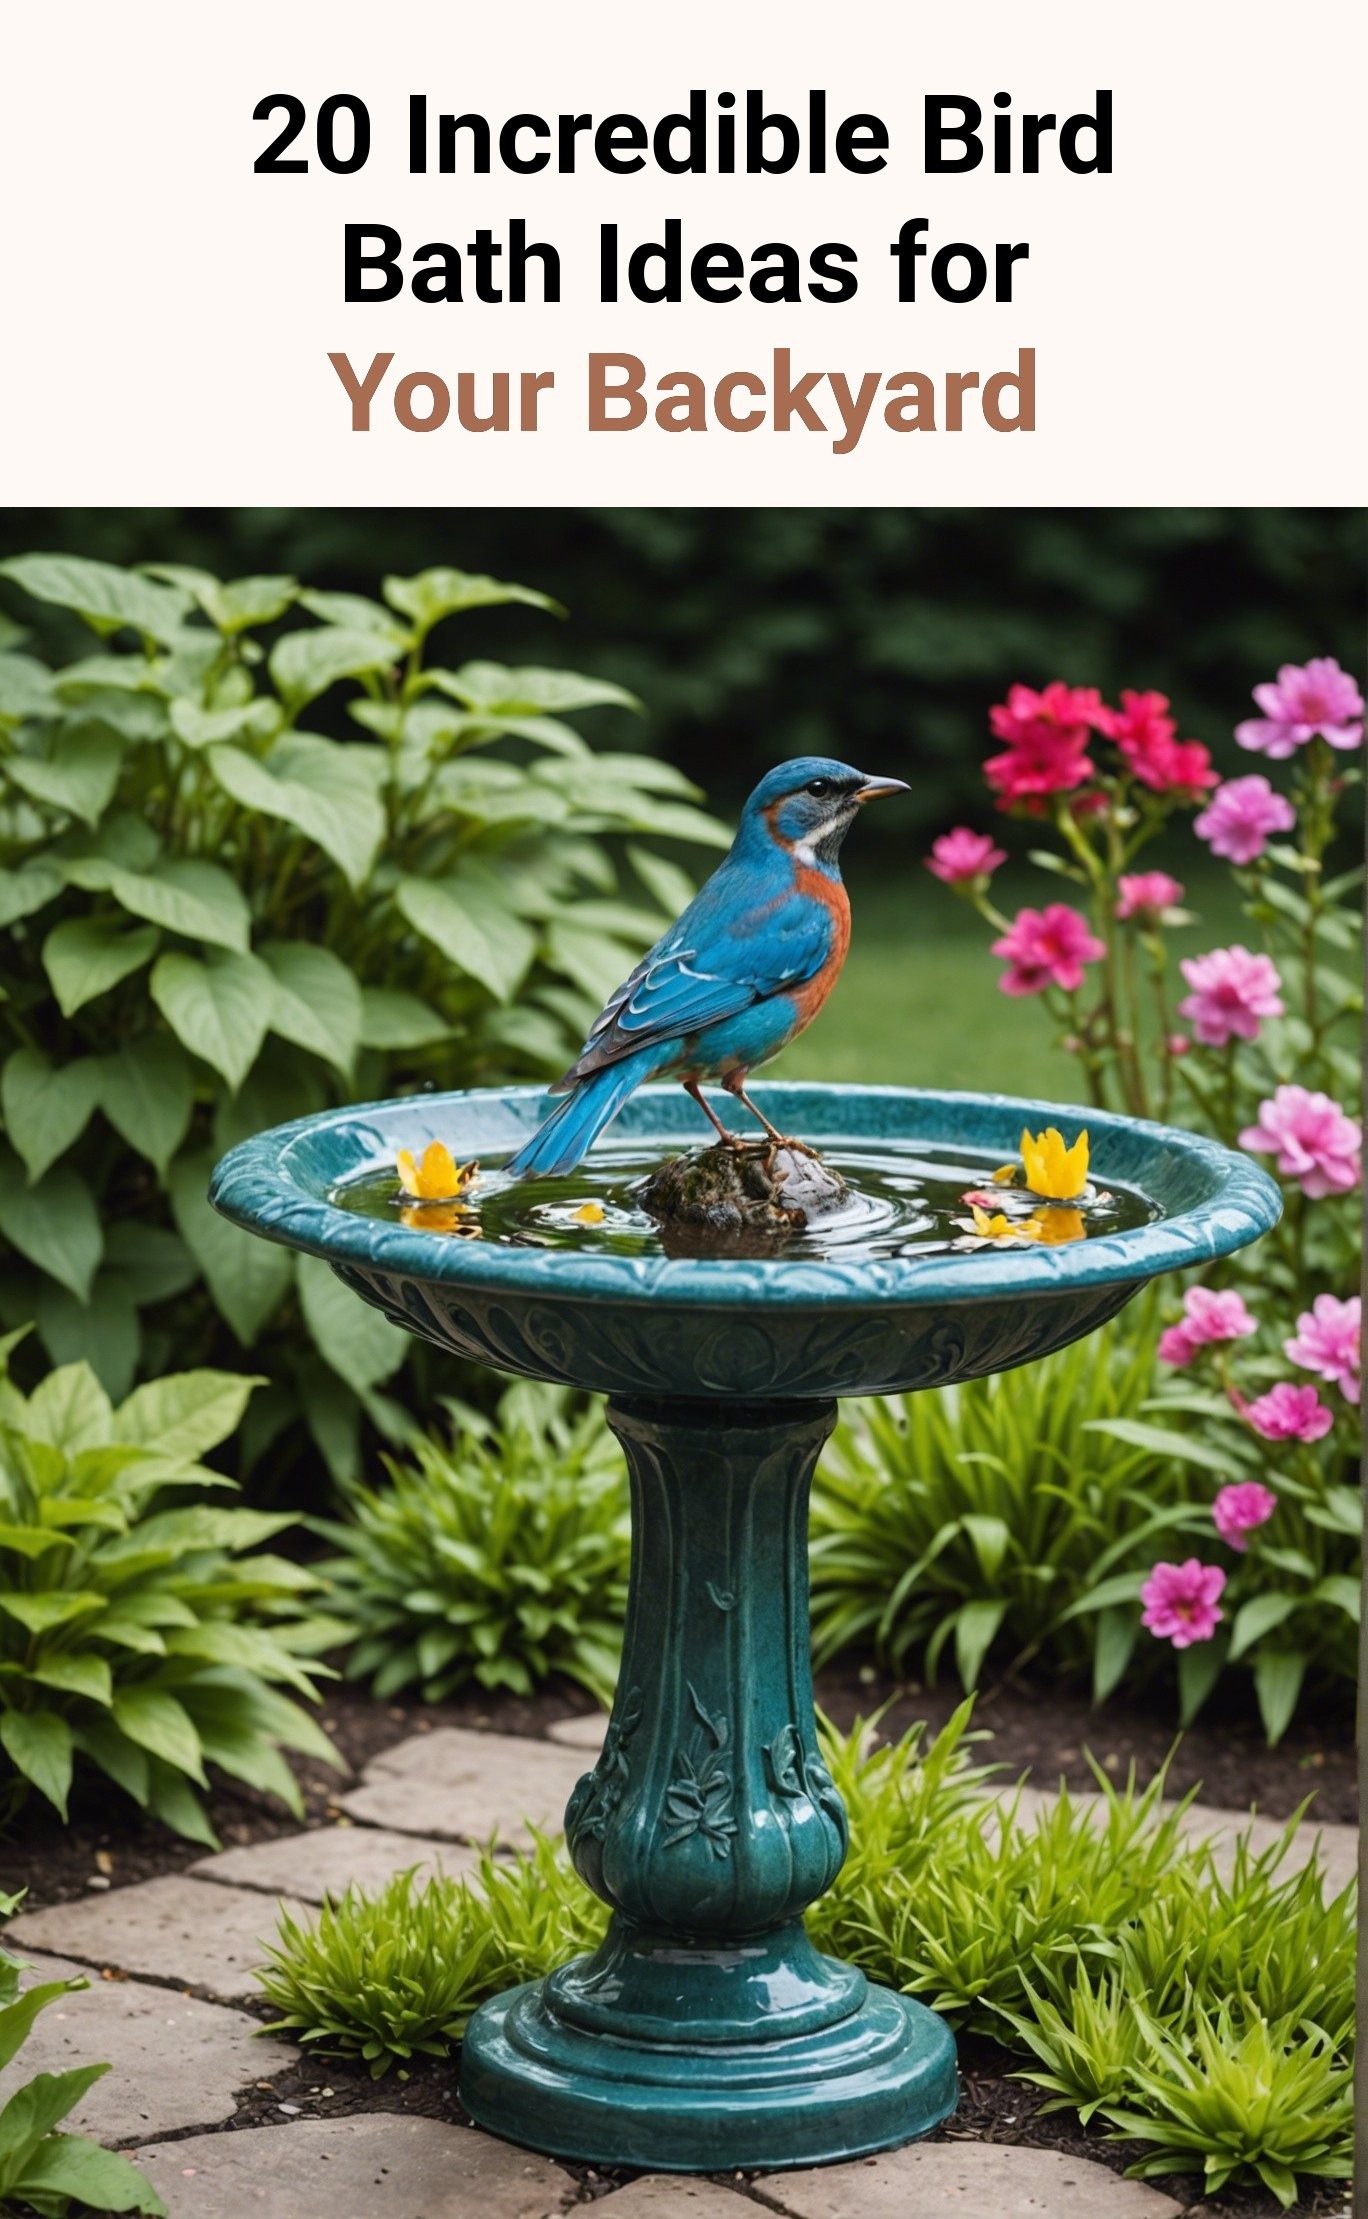 20 Incredible Bird Bath Ideas for Your Backyard